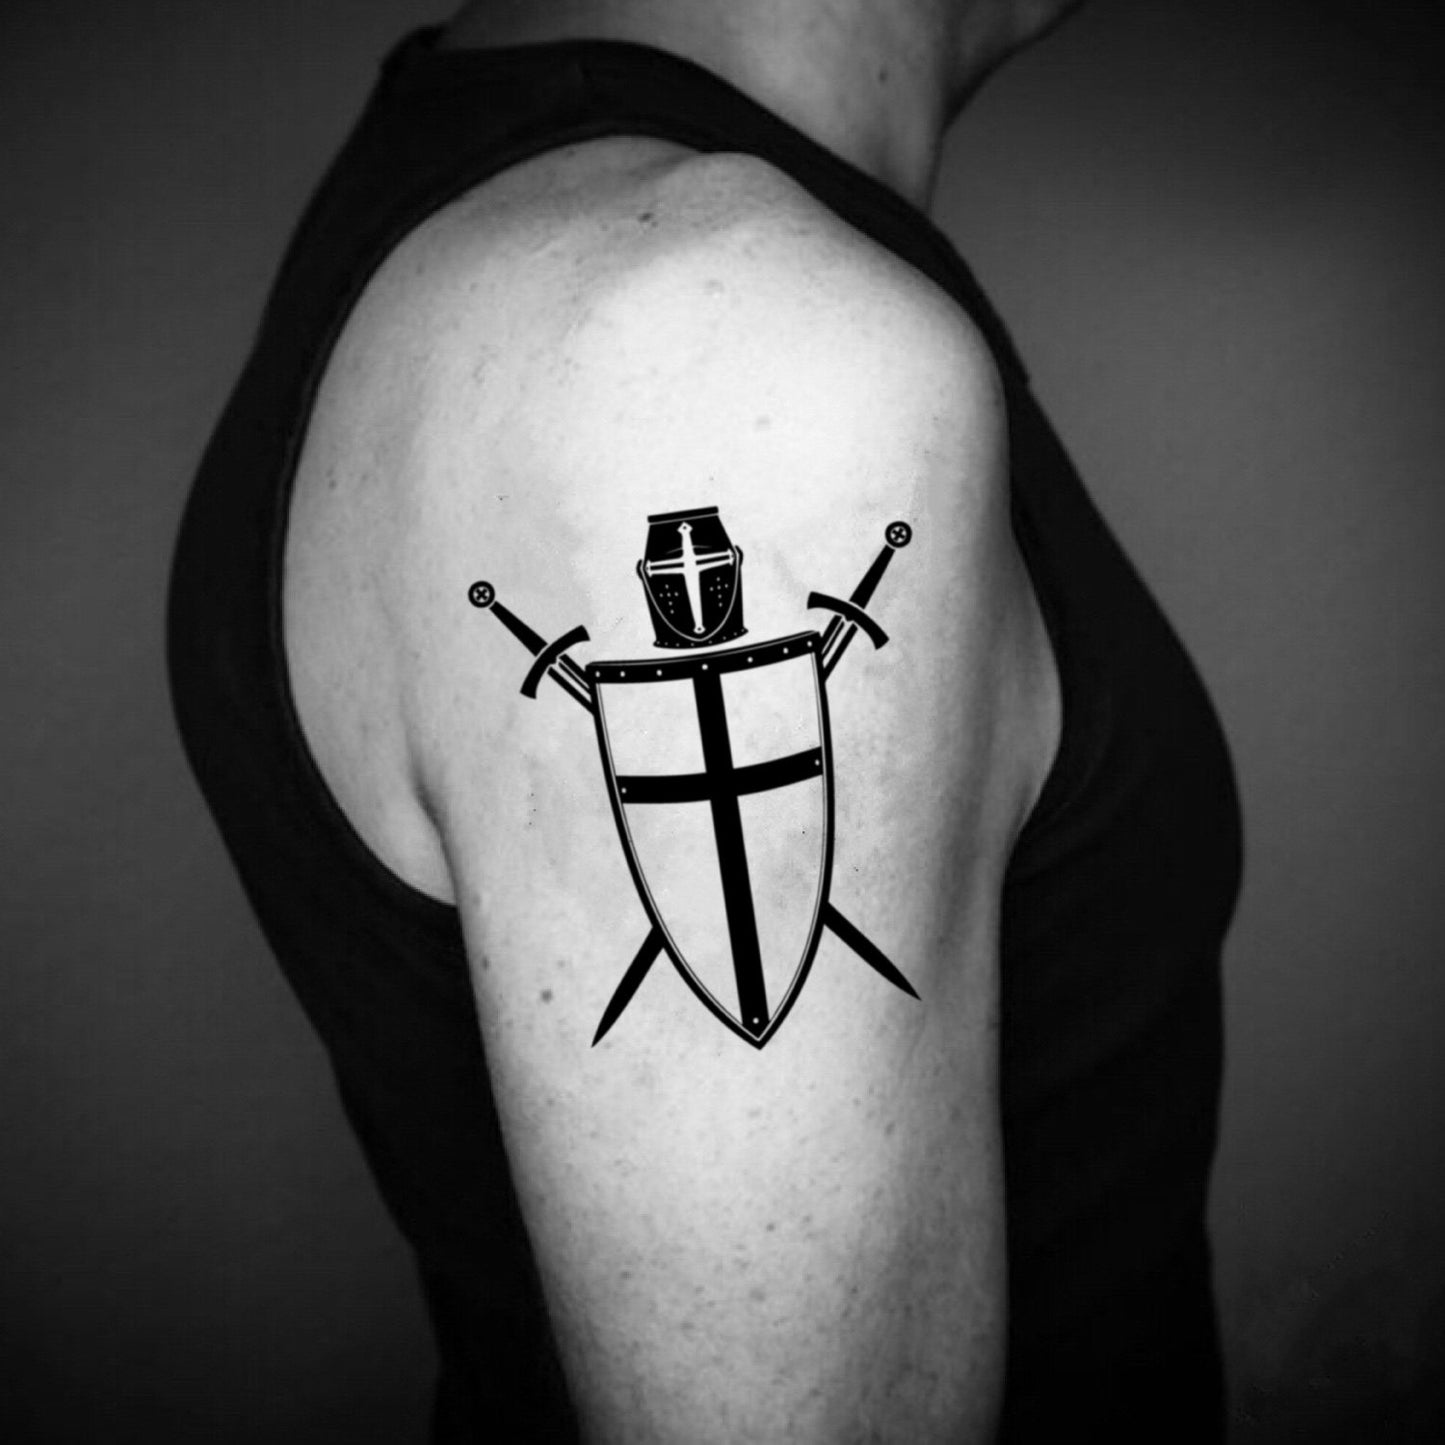 fake medium crusader cross christian knights templar warrior illustrative temporary tattoo sticker design idea on upper arm